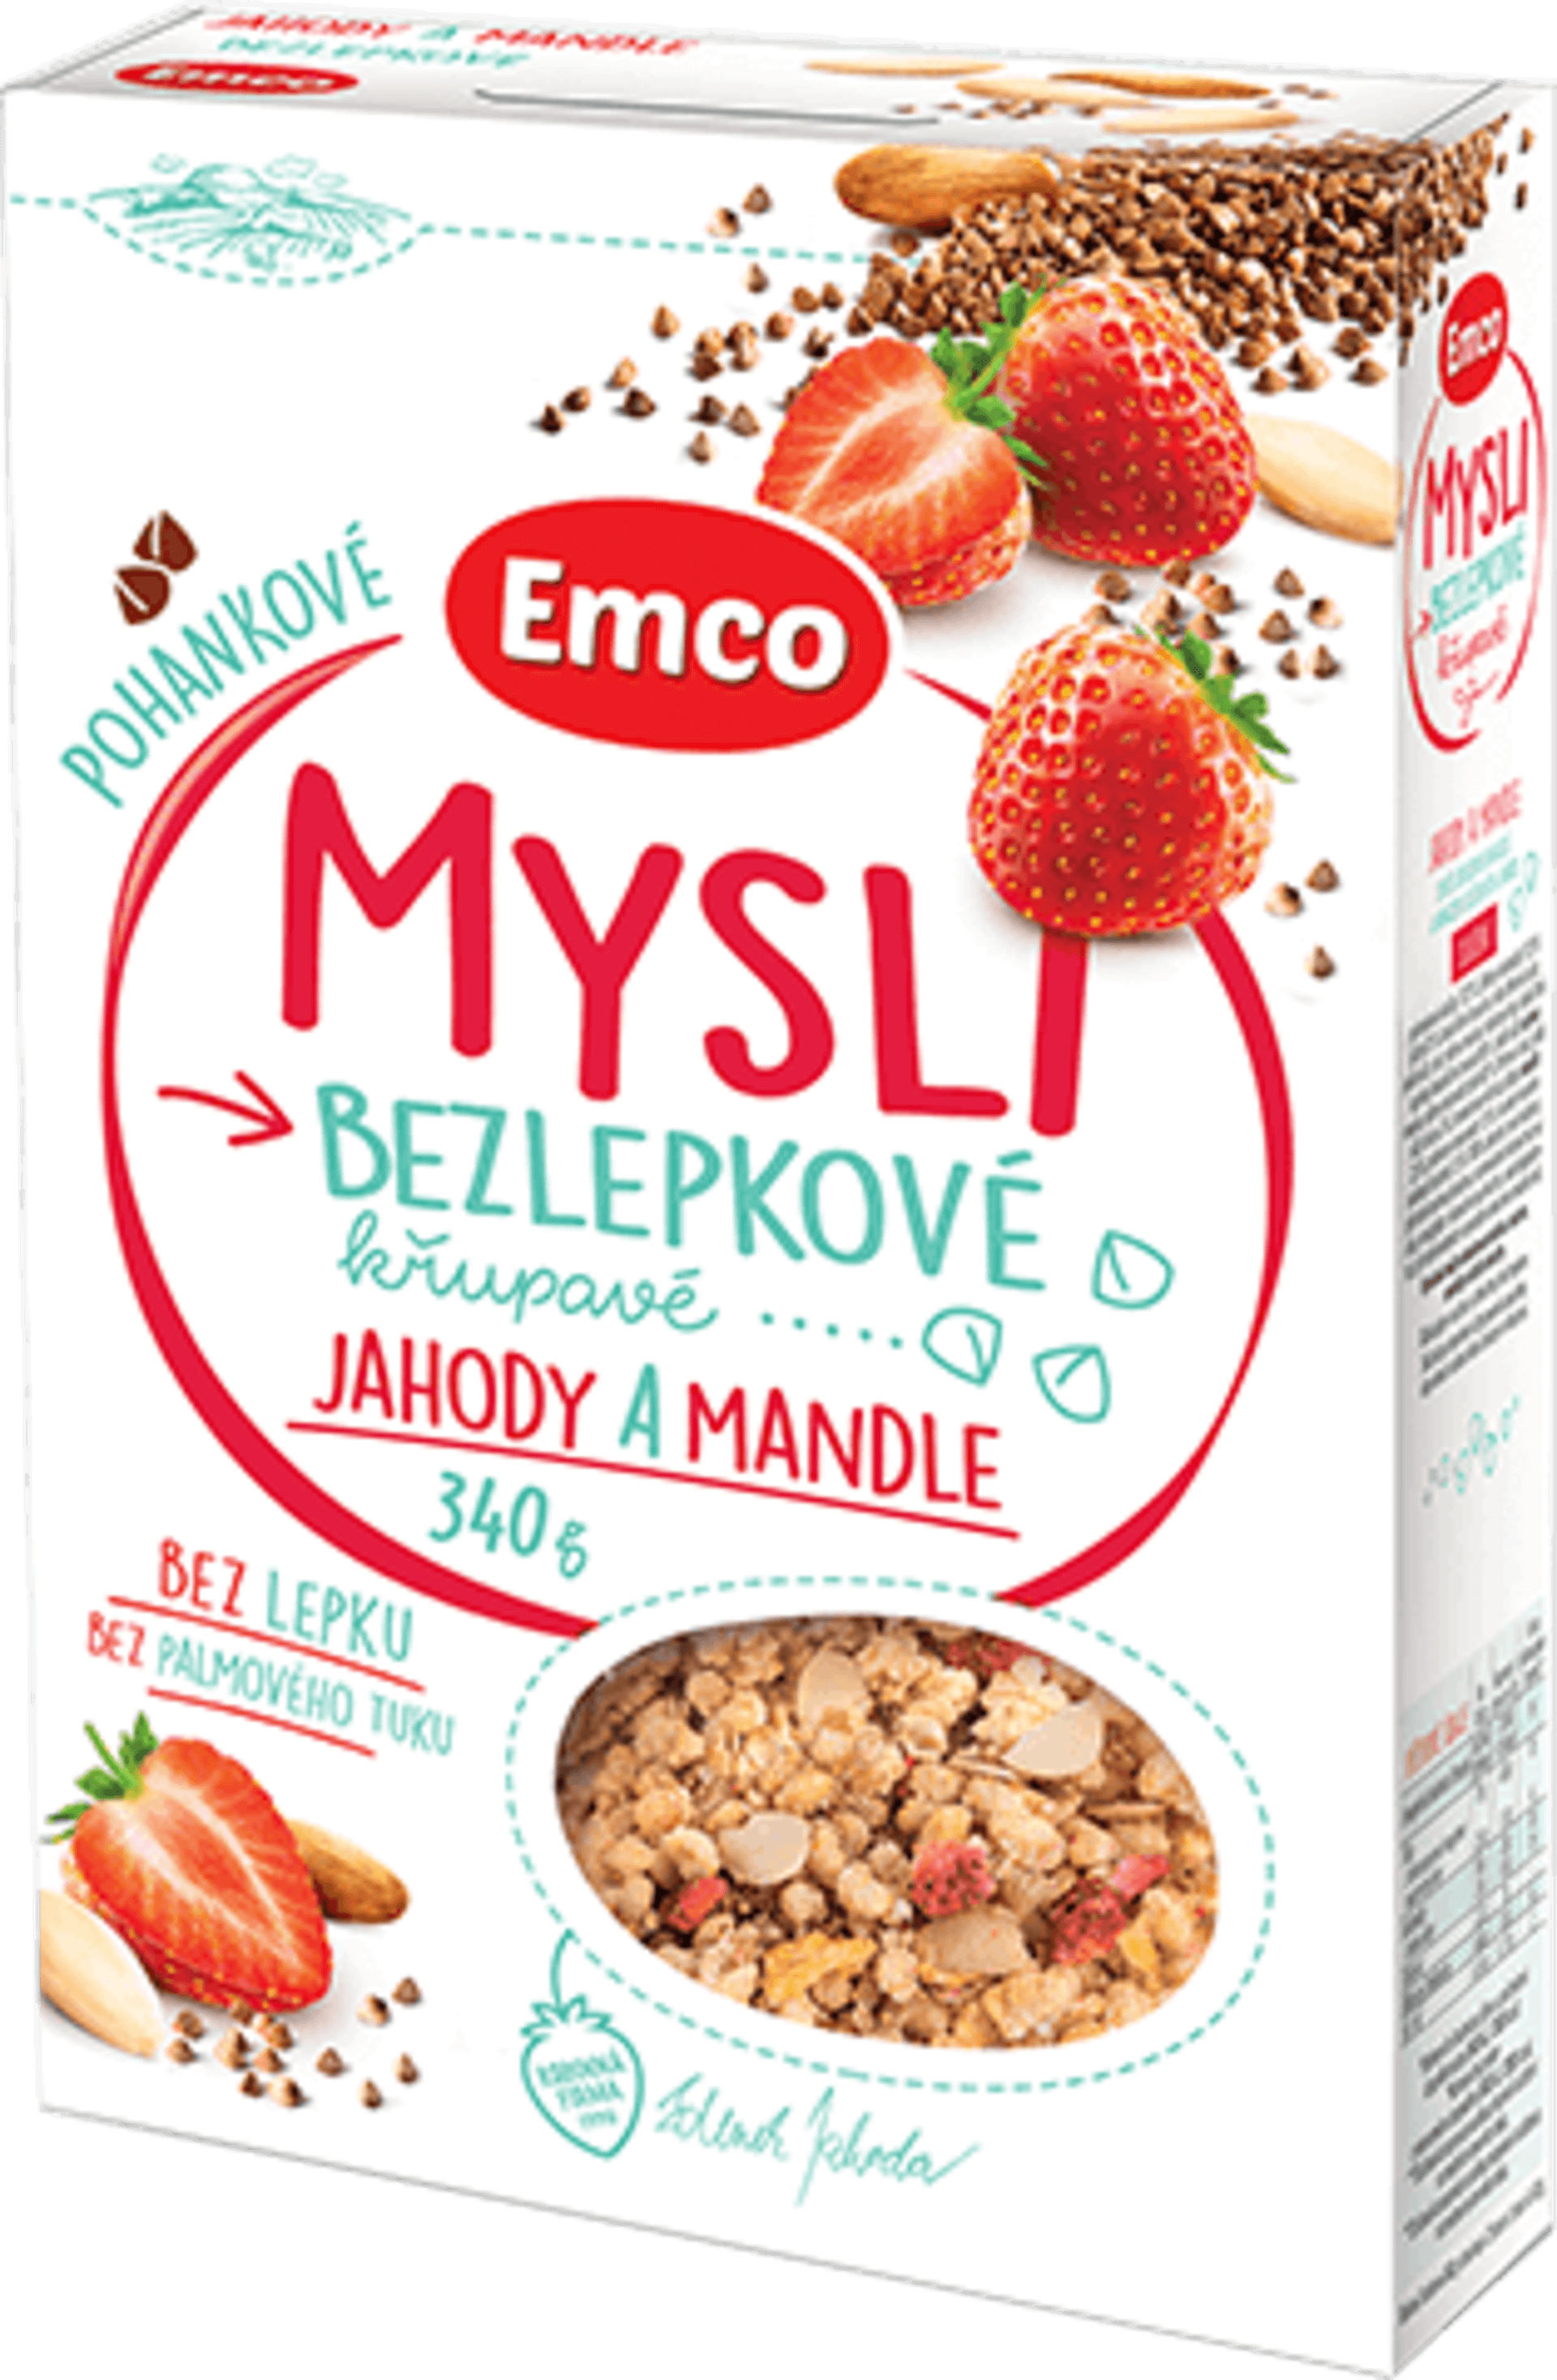 Emco Mysli Pohankové - Jahody a mandle 340 g